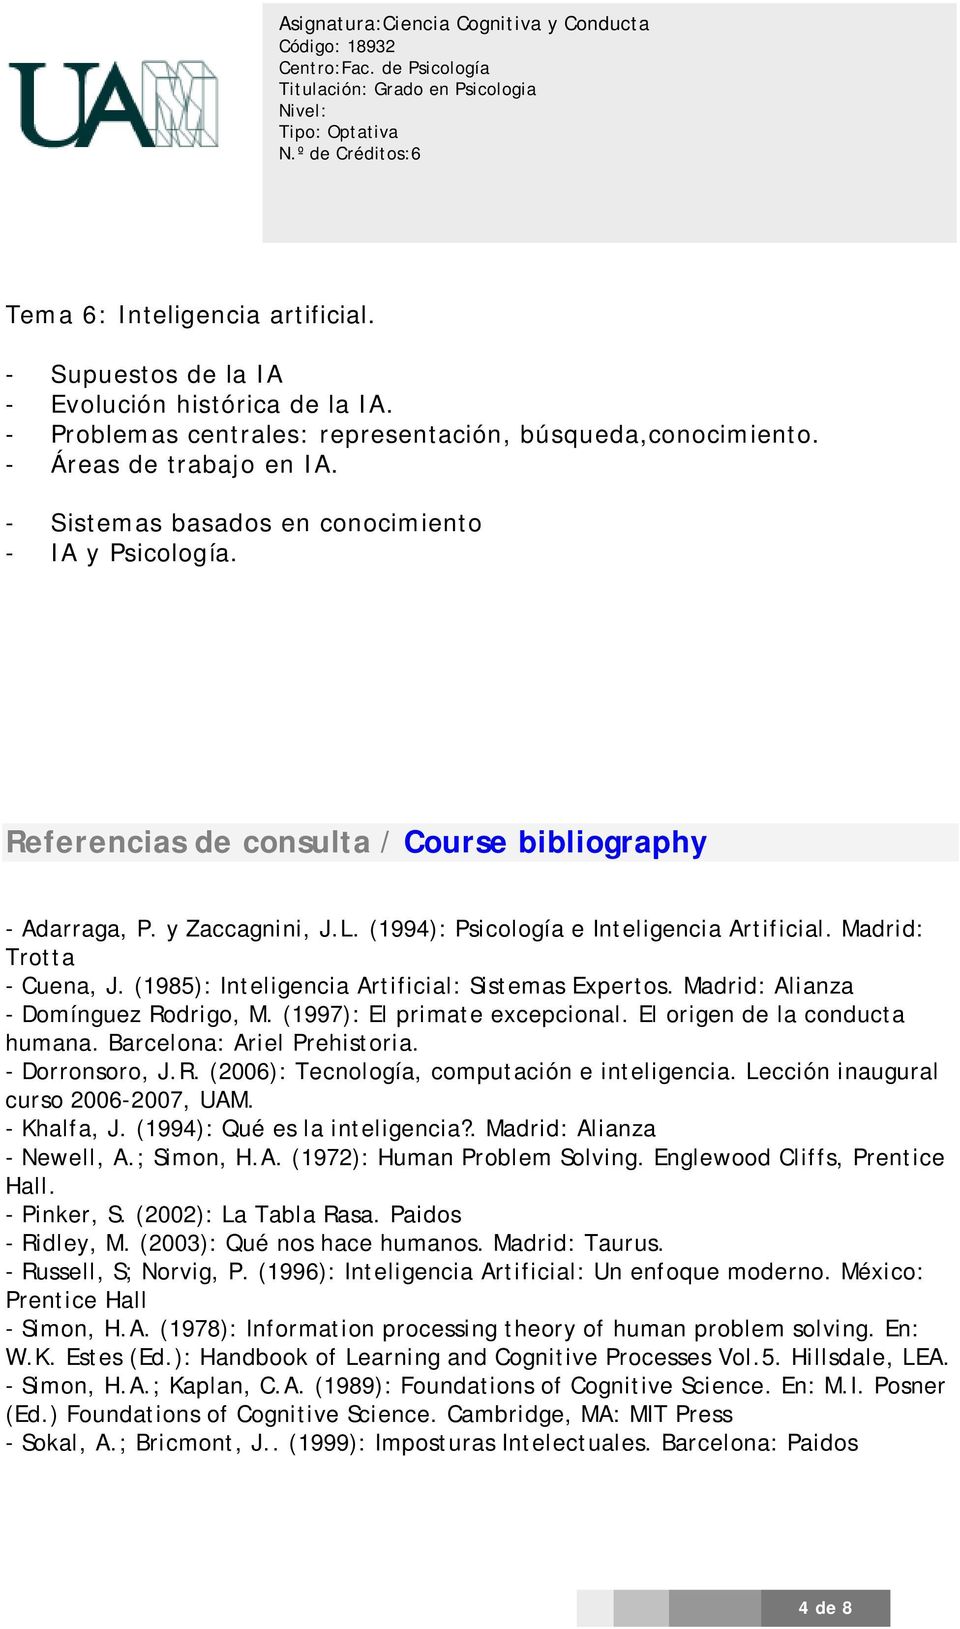 Madrid: Trotta - Cuena, J. (1985): Inteligencia Artificial: Sistemas Expertos. Madrid: Alianza - Domínguez Rodrigo, M. (1997): El primate excepcional. El origen de la conducta humana.